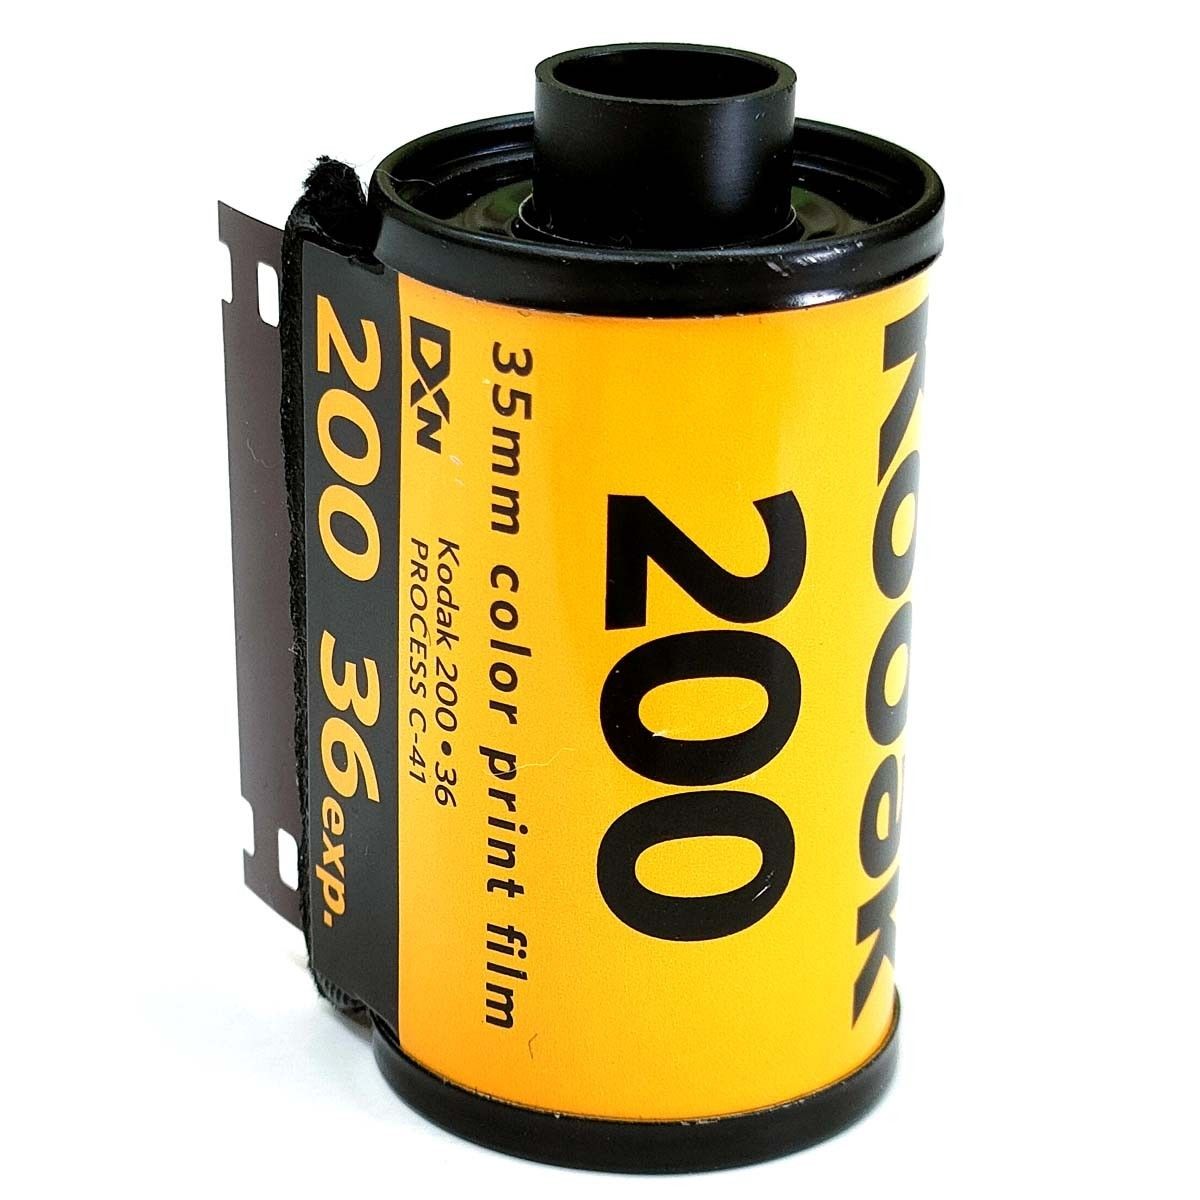 GOLD200-36枚撮【3本入】Kodak ネガカラーフィルム 135/35mm 新品 コダック ネガフィルム